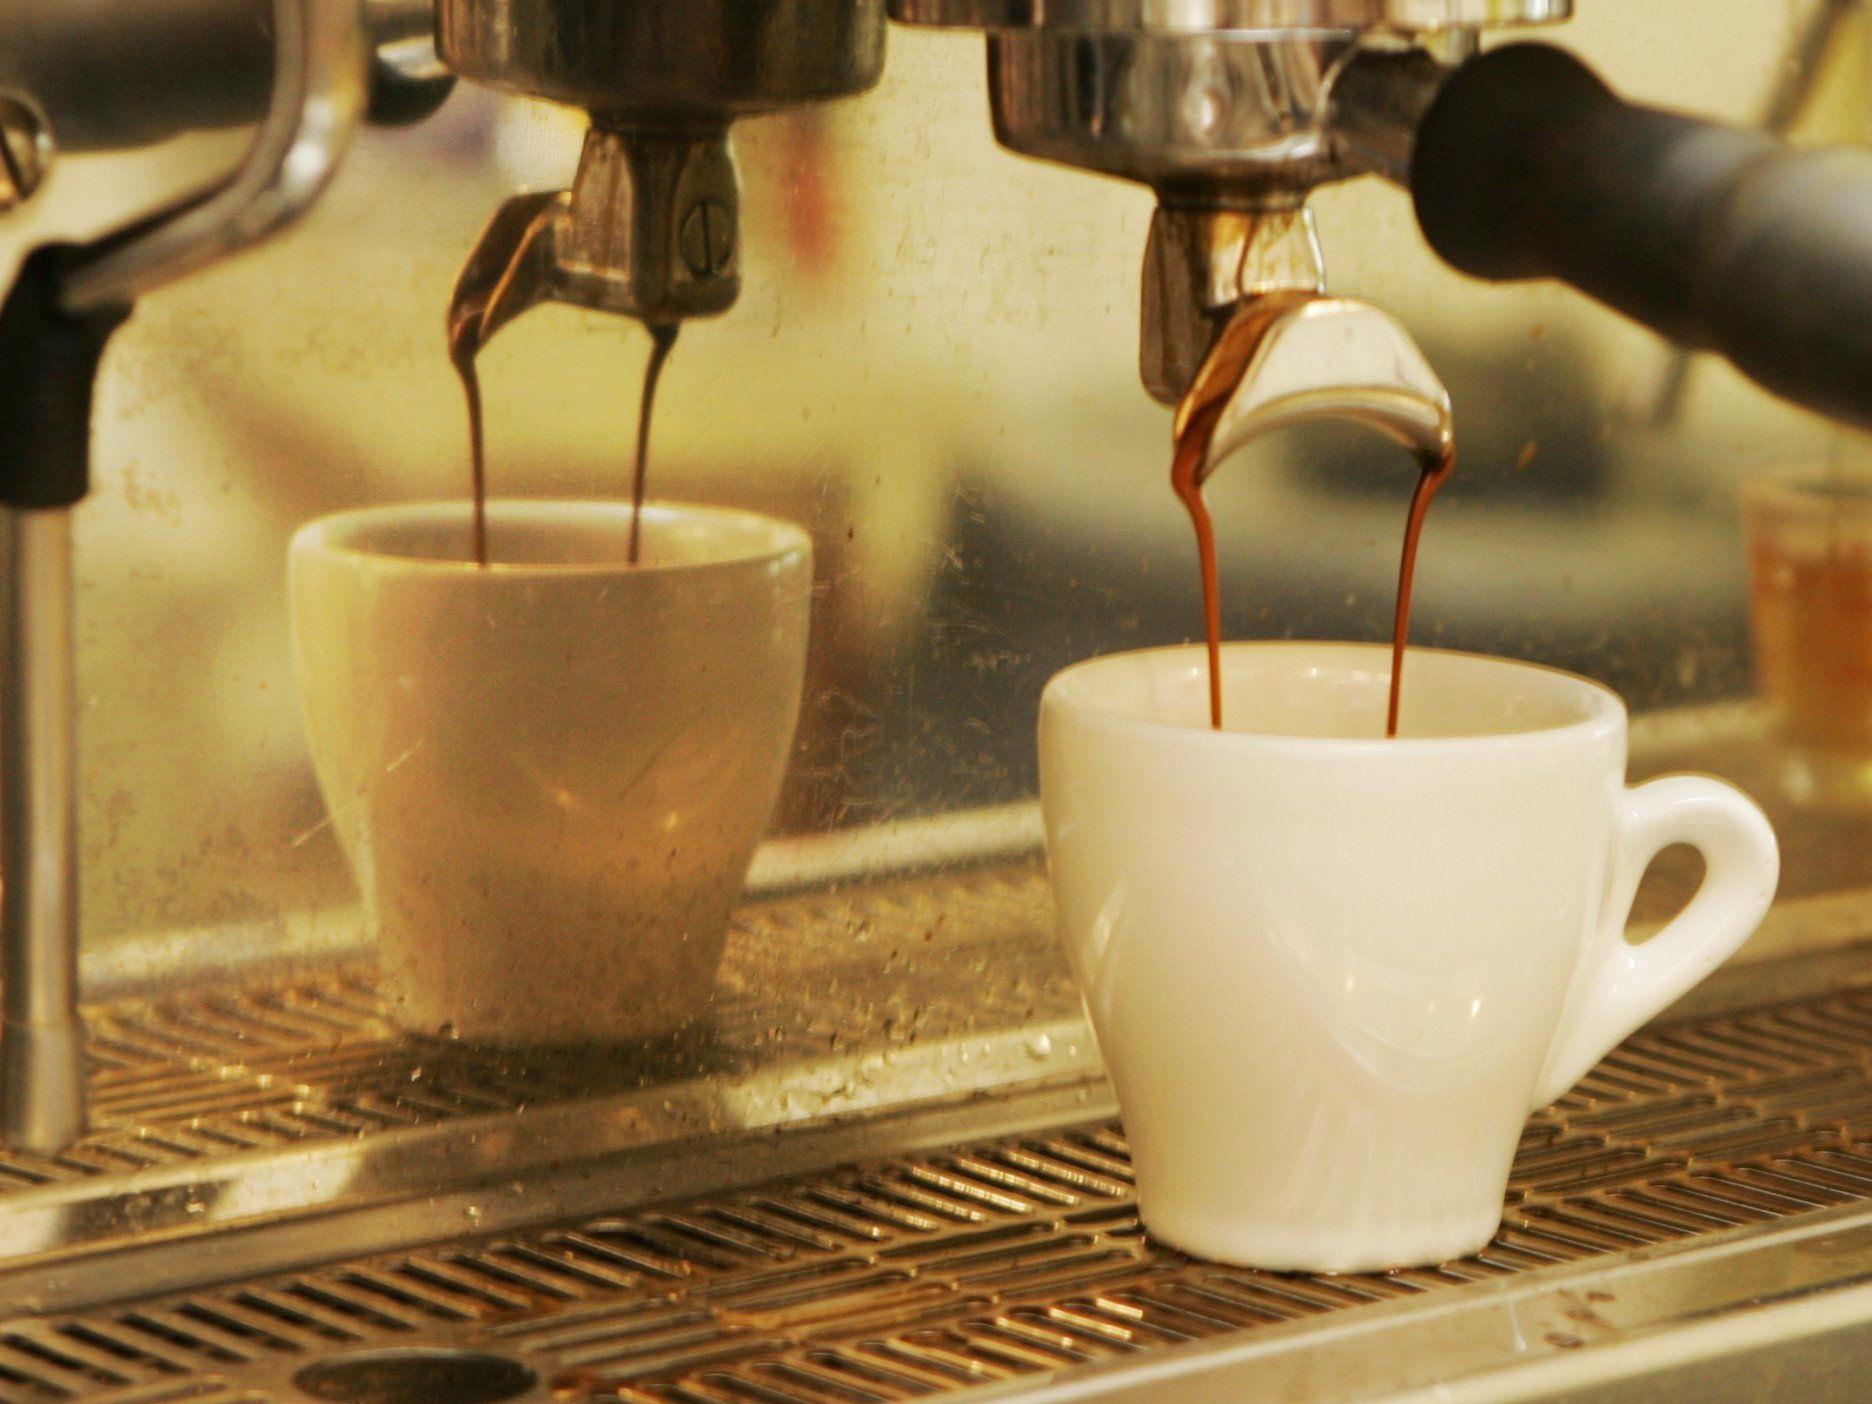 Grazer Forscher entdeckten neuen gesundheitsfördernden Aspekt von schwarzem Kaffee.